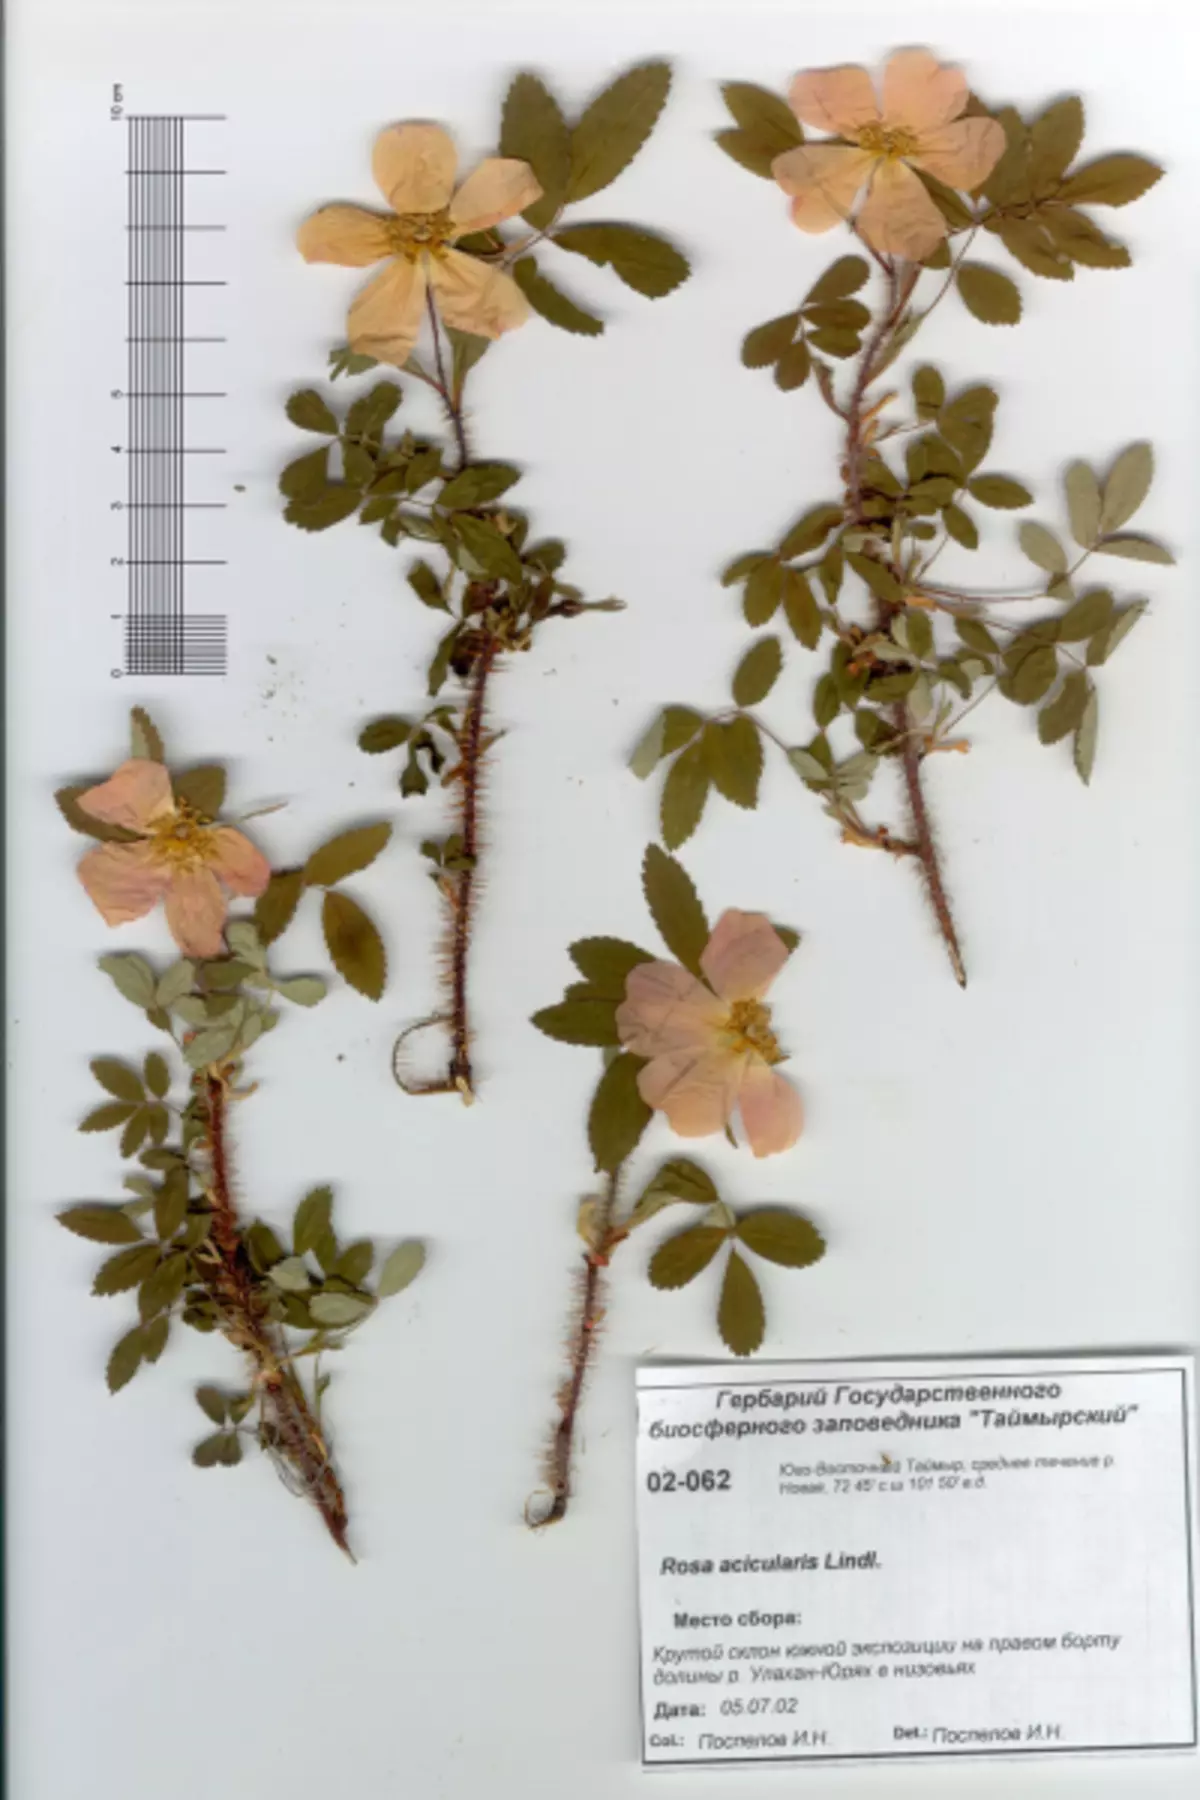 Herbarium iz listov s svojimi rokami za vrtce in šolo s fotografijami